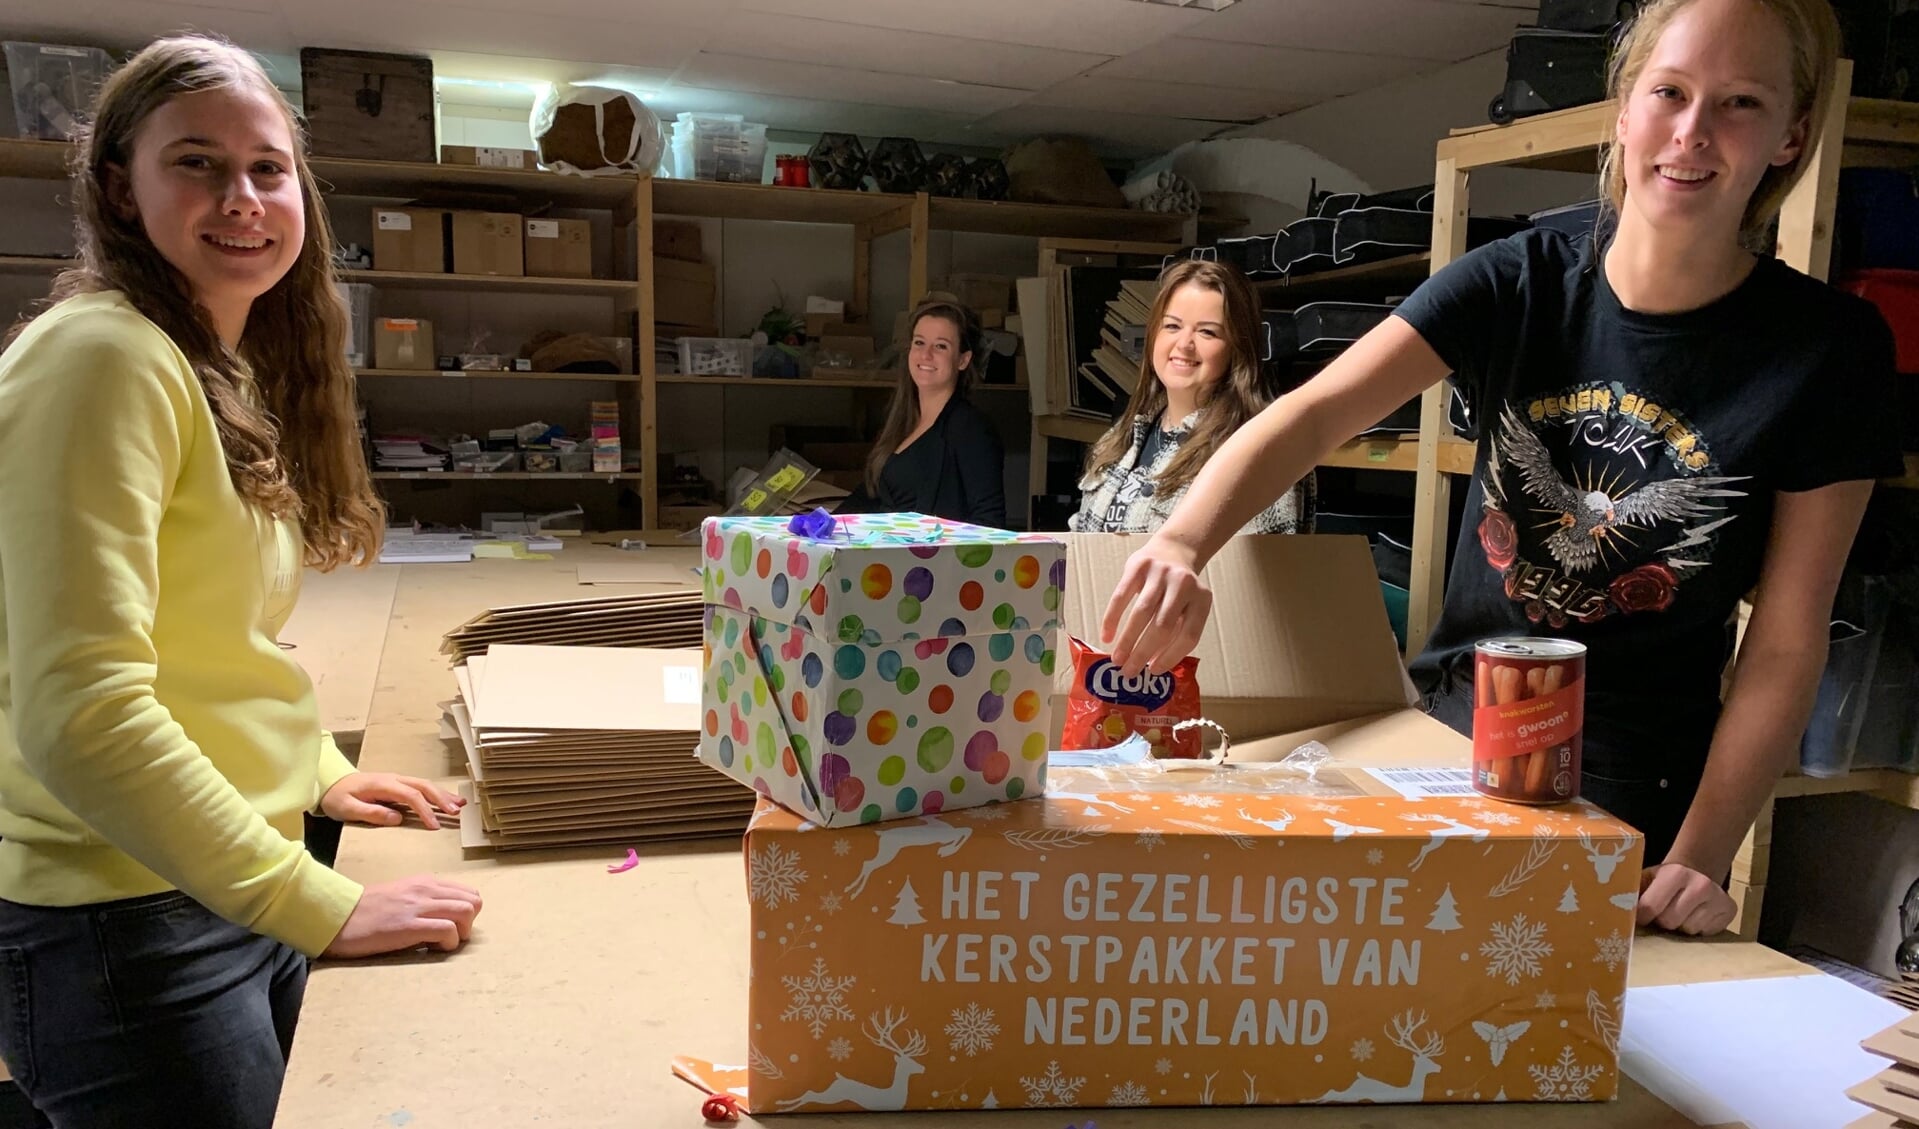 'Het gezelligste kerstpakket van Nederland' wordt ingepakt door Lisa, Hielke, Sanne en Carlijn.